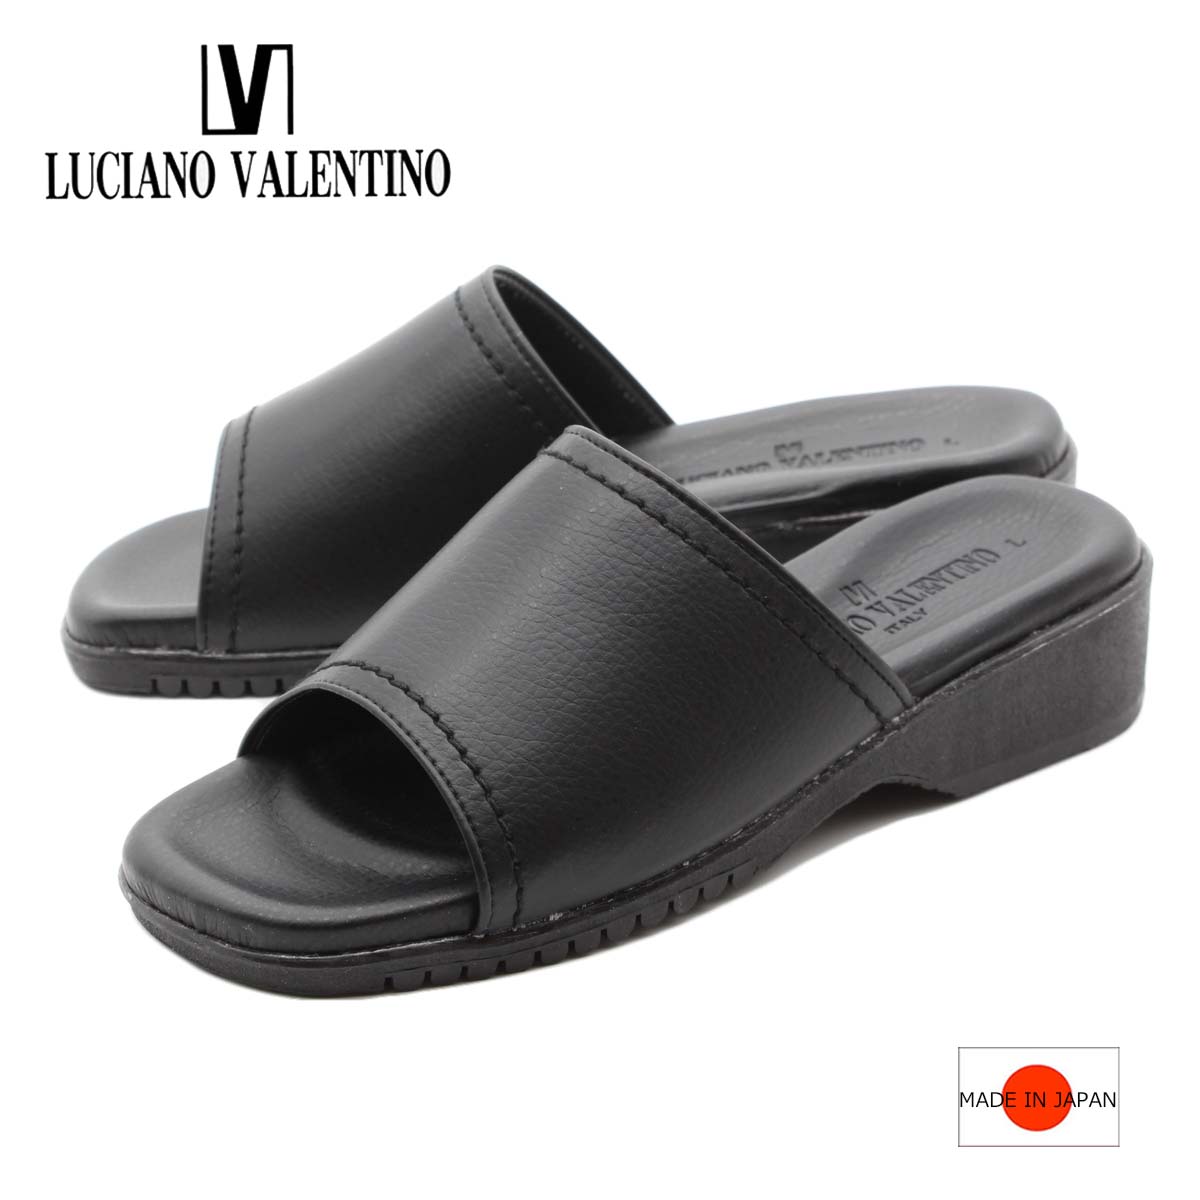 LUCIANO VALENTINO ルチアーノバレンチノ サンダル オフィスサンダル ミュール レディース 靴 黒 ブラック ウェッジ 仕事 日本製 国産 im5740